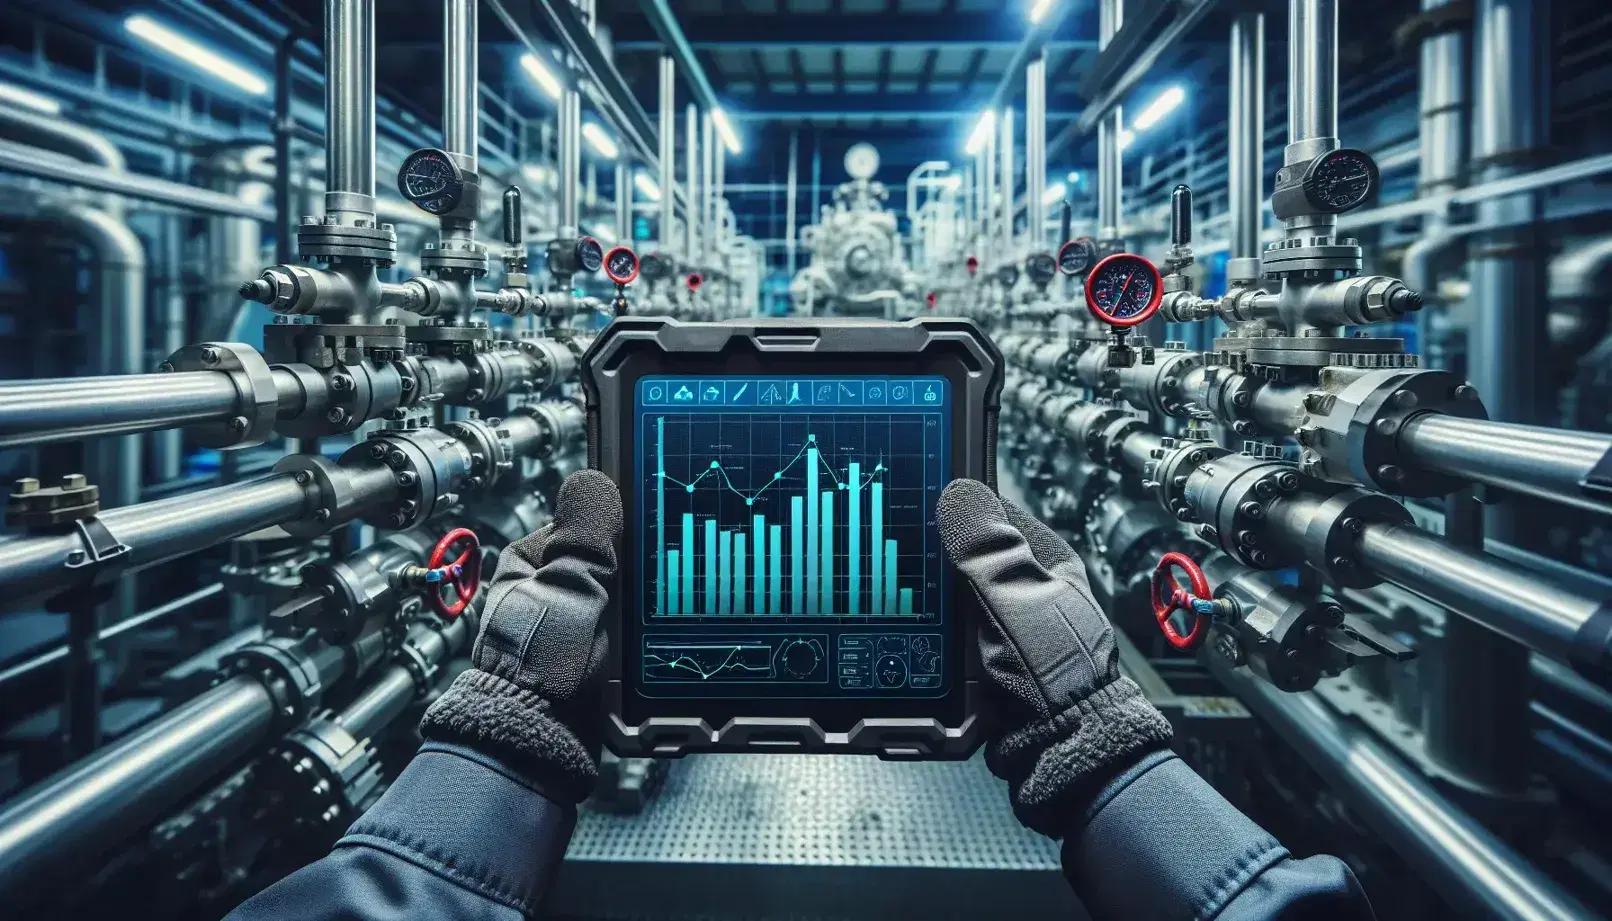 Manos con guantes sosteniendo tableta digital robusta con gráficos frente a maquinaria industrial con tuberías metálicas, válvulas rojas y manómetros.